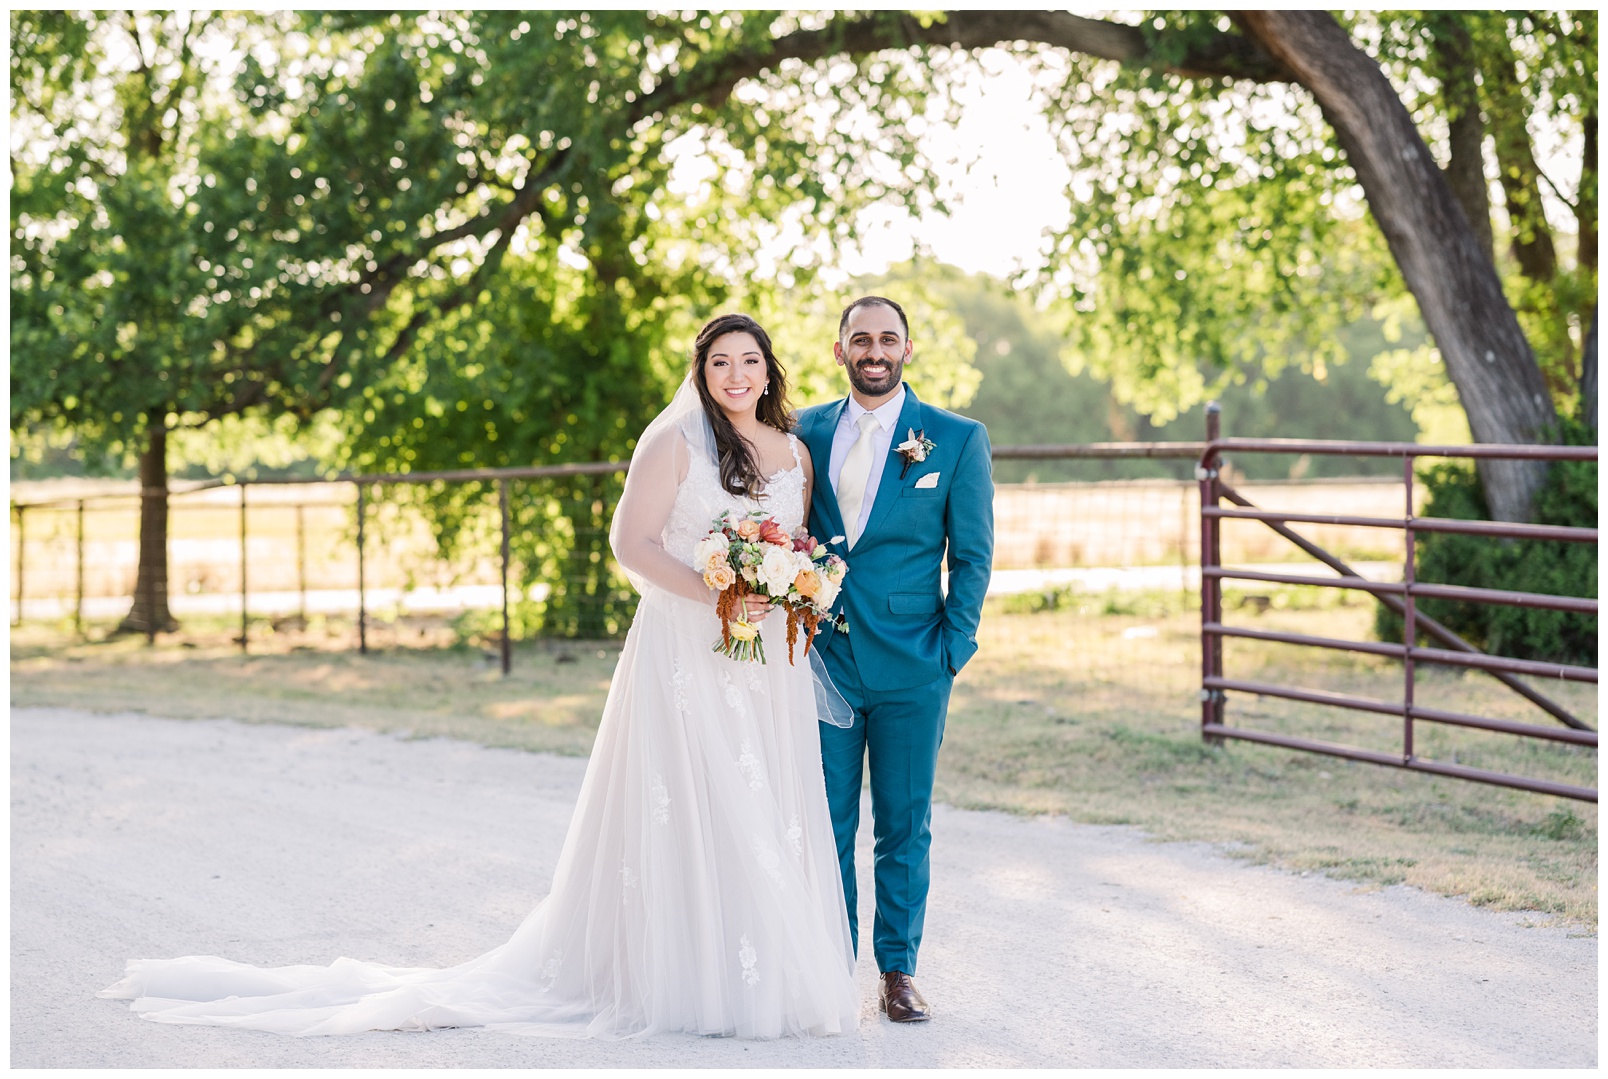 Best wedding photographer in Round Rock Texas